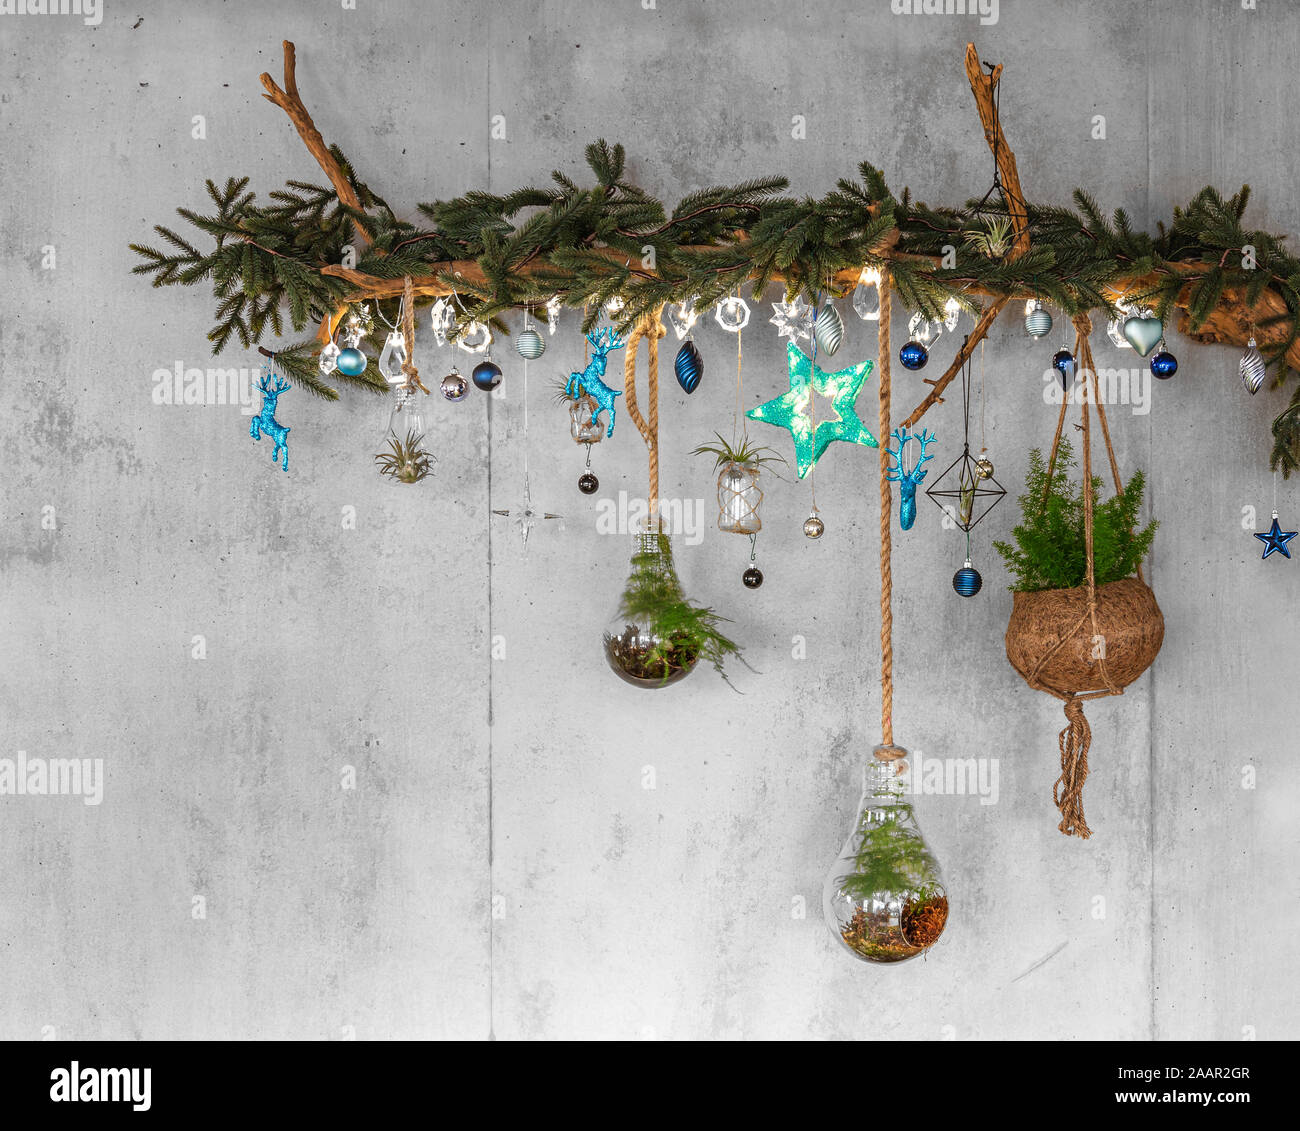 Legno decorativo ramo con rami di abete e appeso teal baubles di natale,  luci di argento